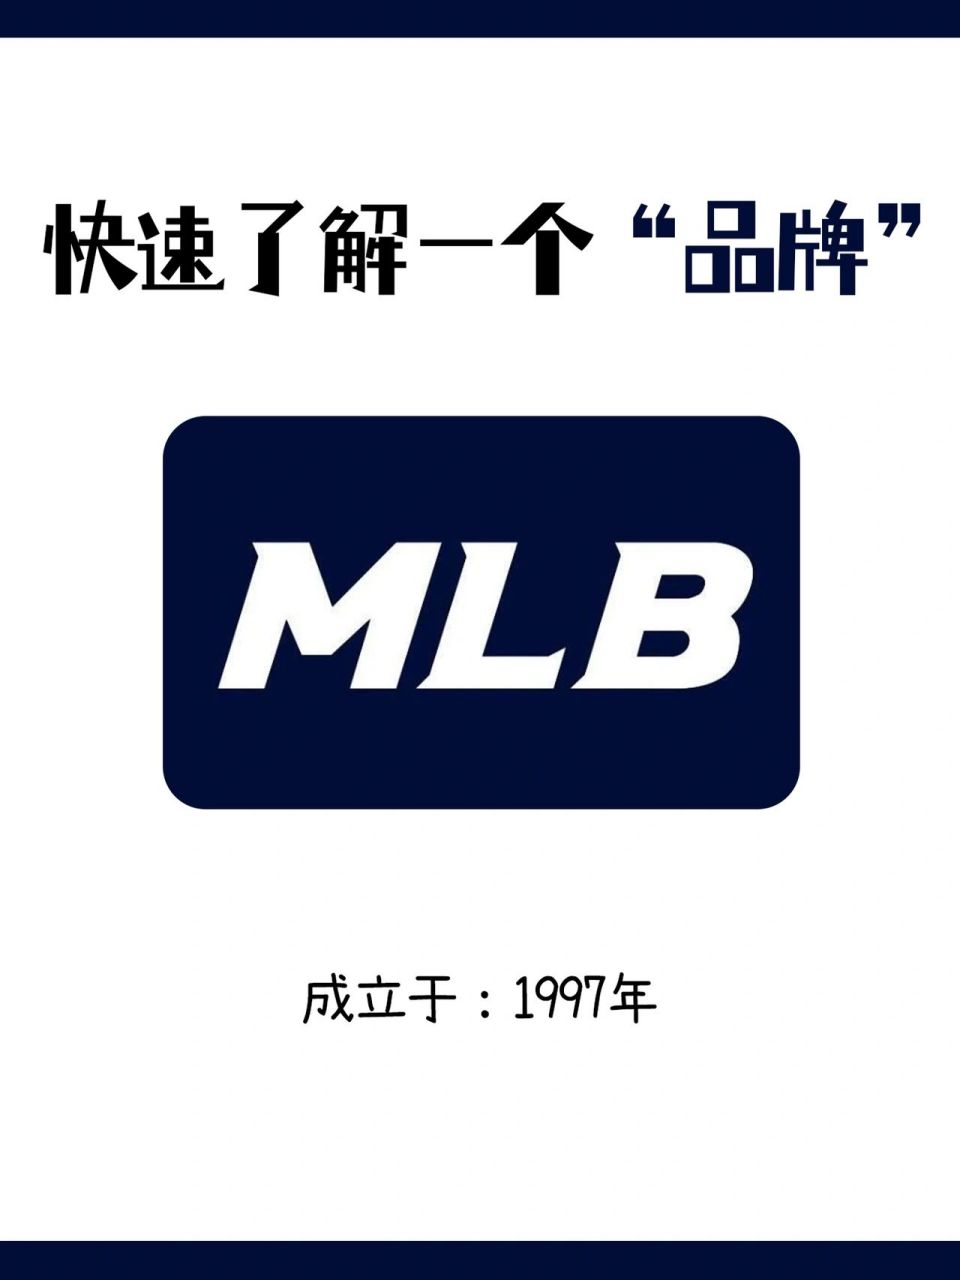 2分钟了解一个品牌 95mlb 品牌:mlb 国家:韩国 成立于:1997年 定位